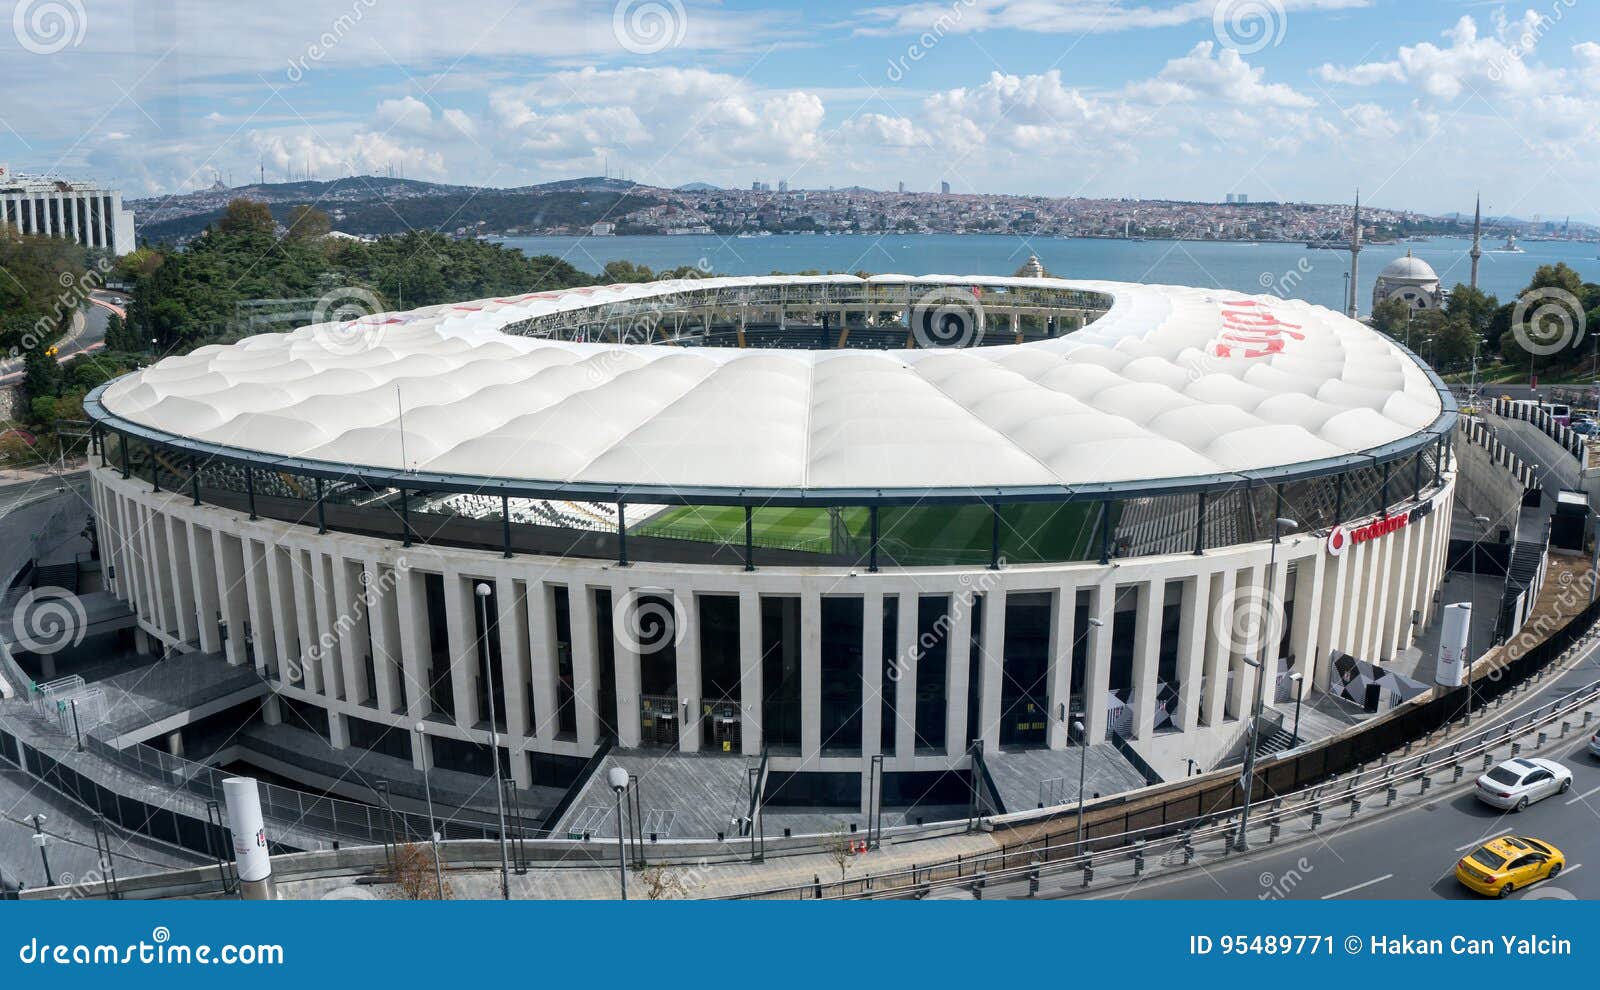 Turkische Fussballverein Besiktas S Neue Stadion Vodafone Arena Redaktionelles Foto Bild Von Spieler Truthahn 95489771